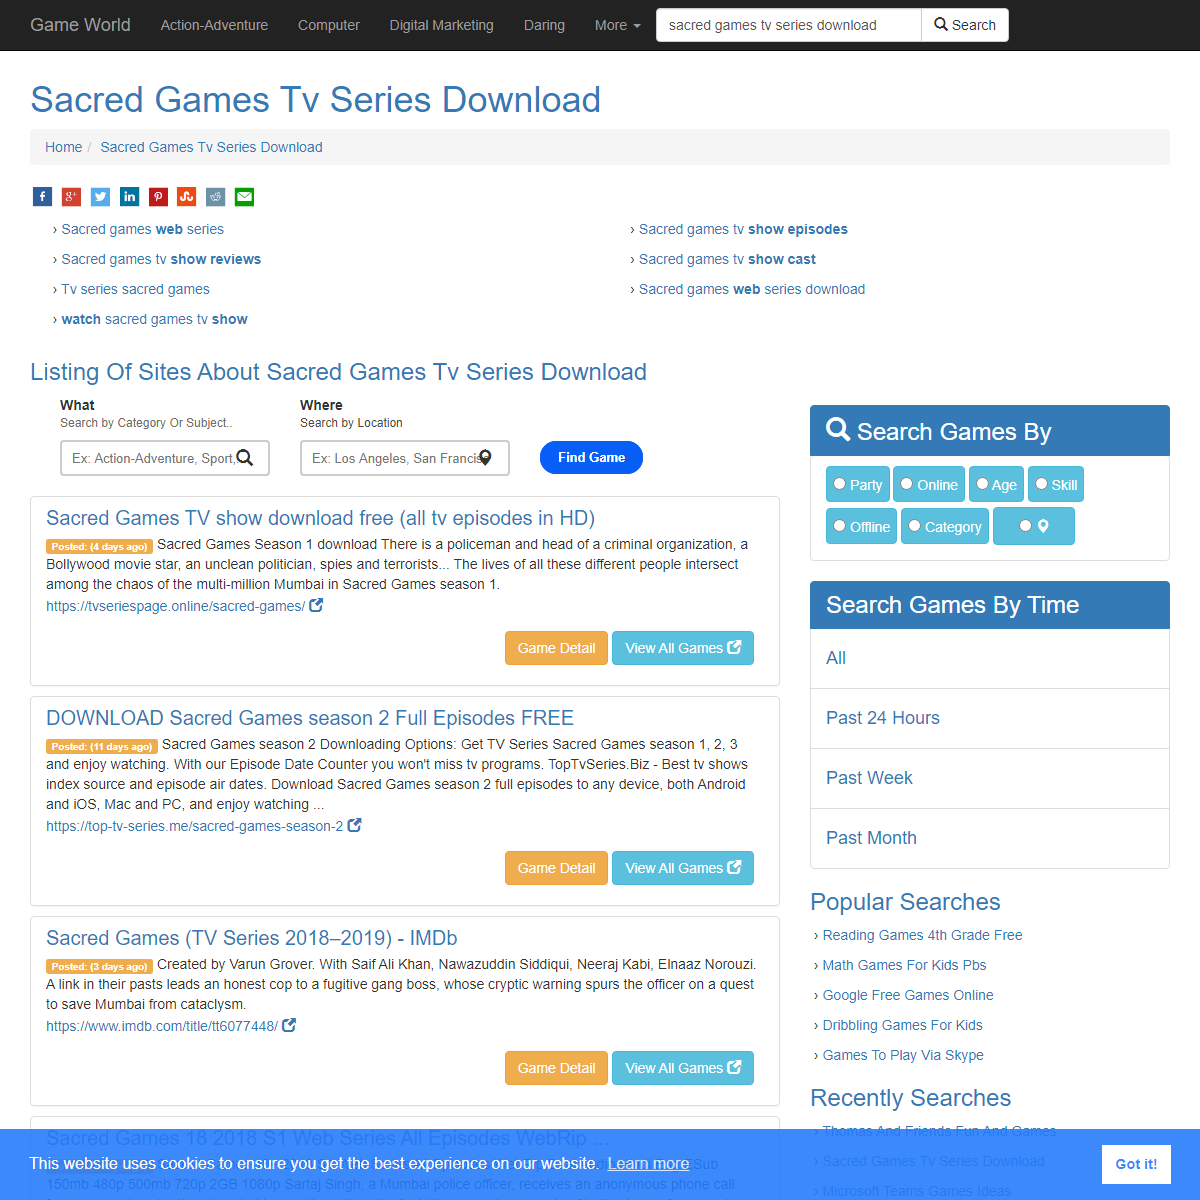 A complete backup of https://wefindgames.com/sacred-games-tv-series-download